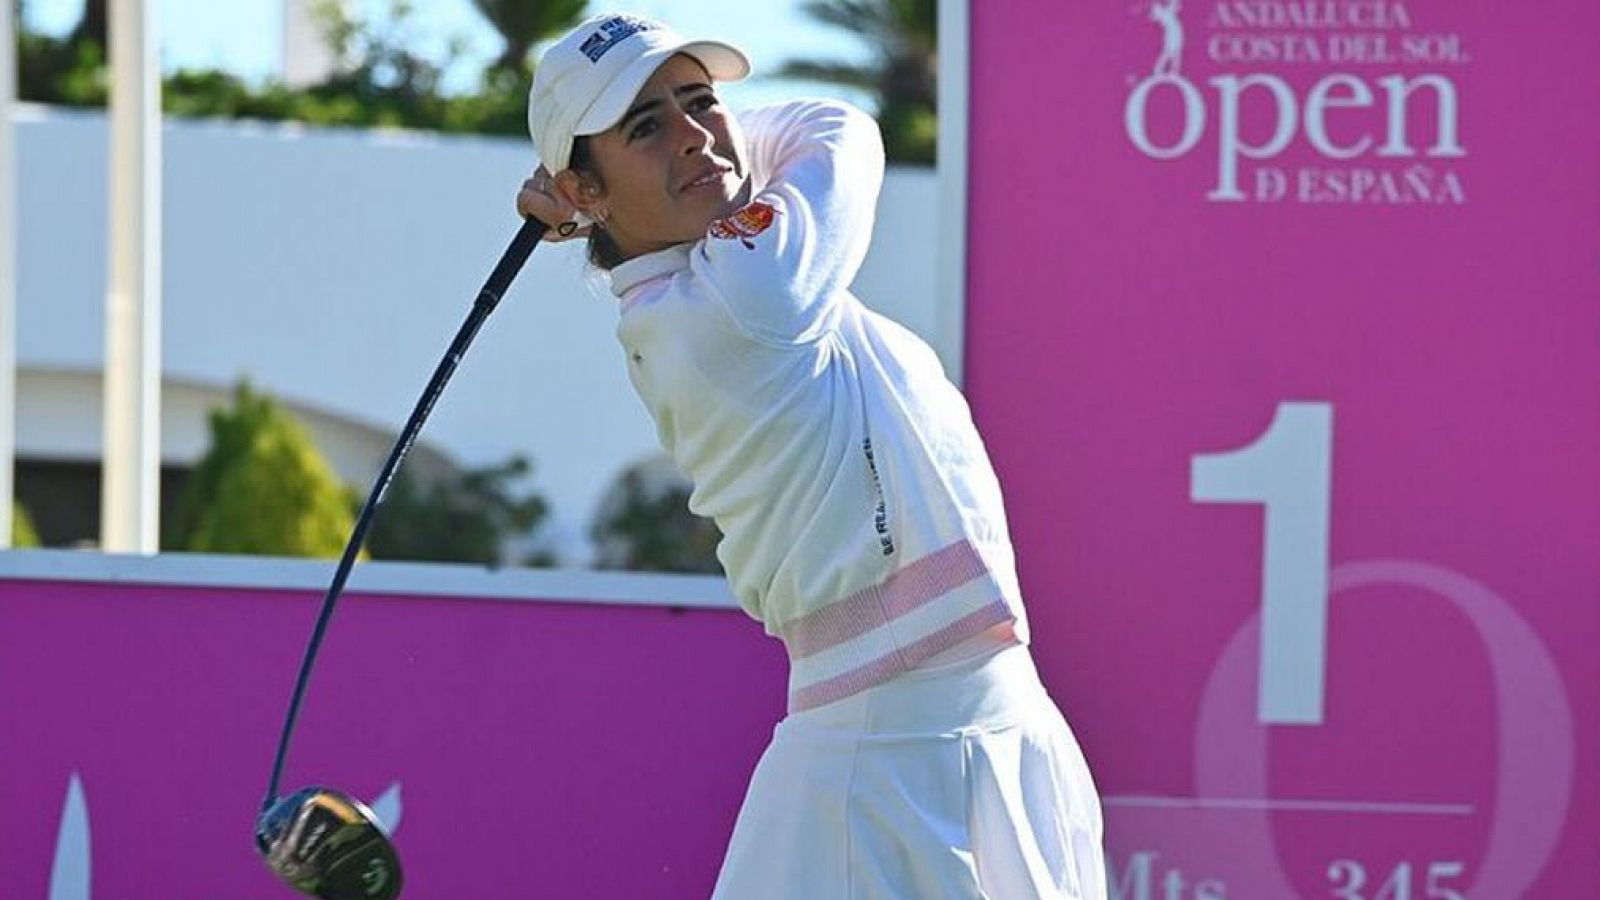 Golf Ana Peláez: "No pierdo la esperanza de estar en París 2024 "